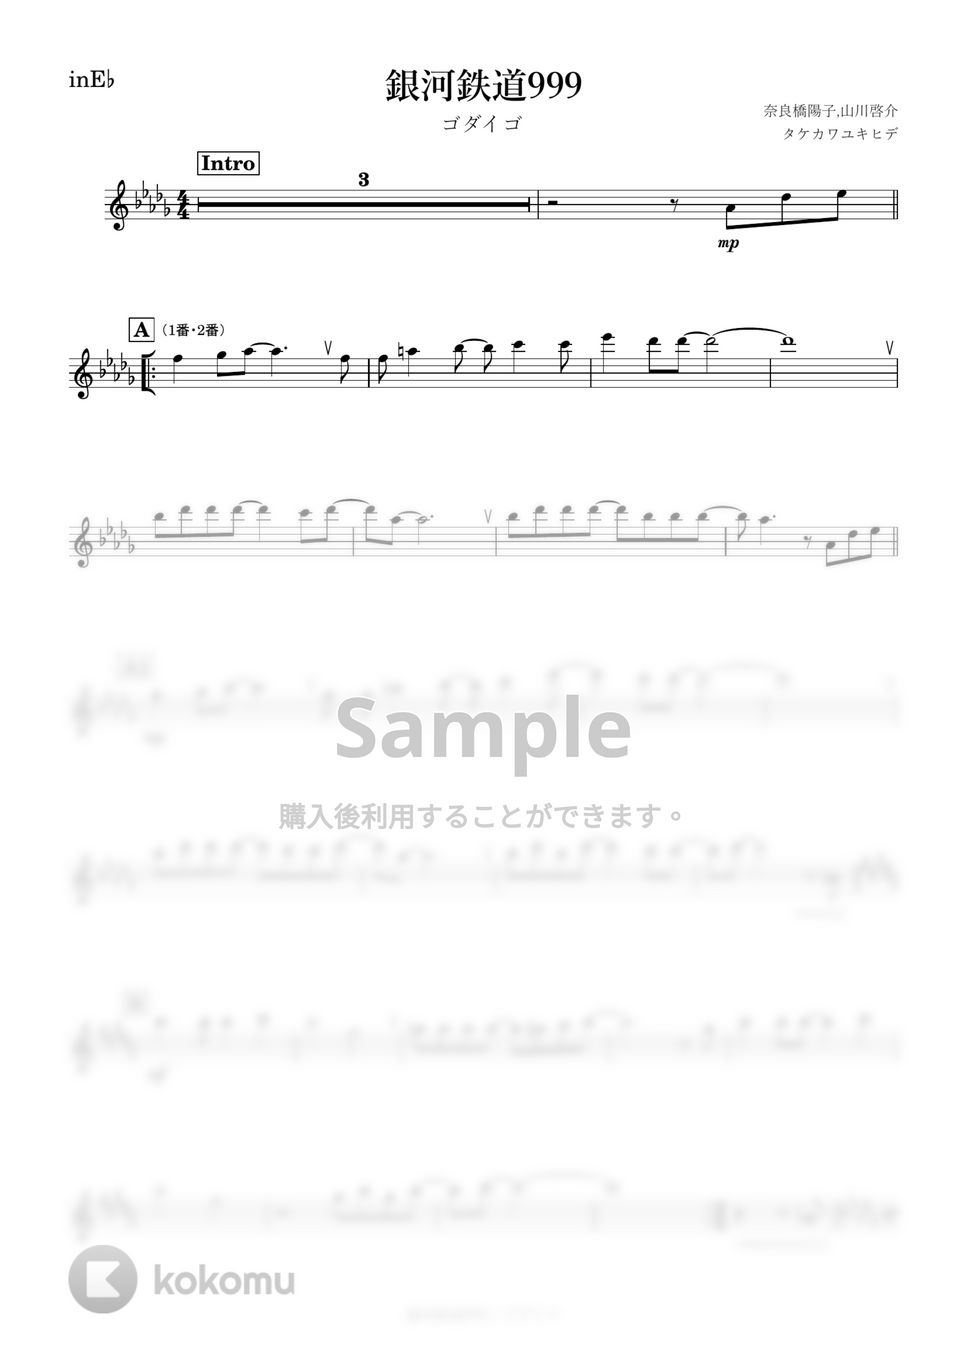 ゴダイゴ - 銀河鉄道999 (E♭) by kanamusic